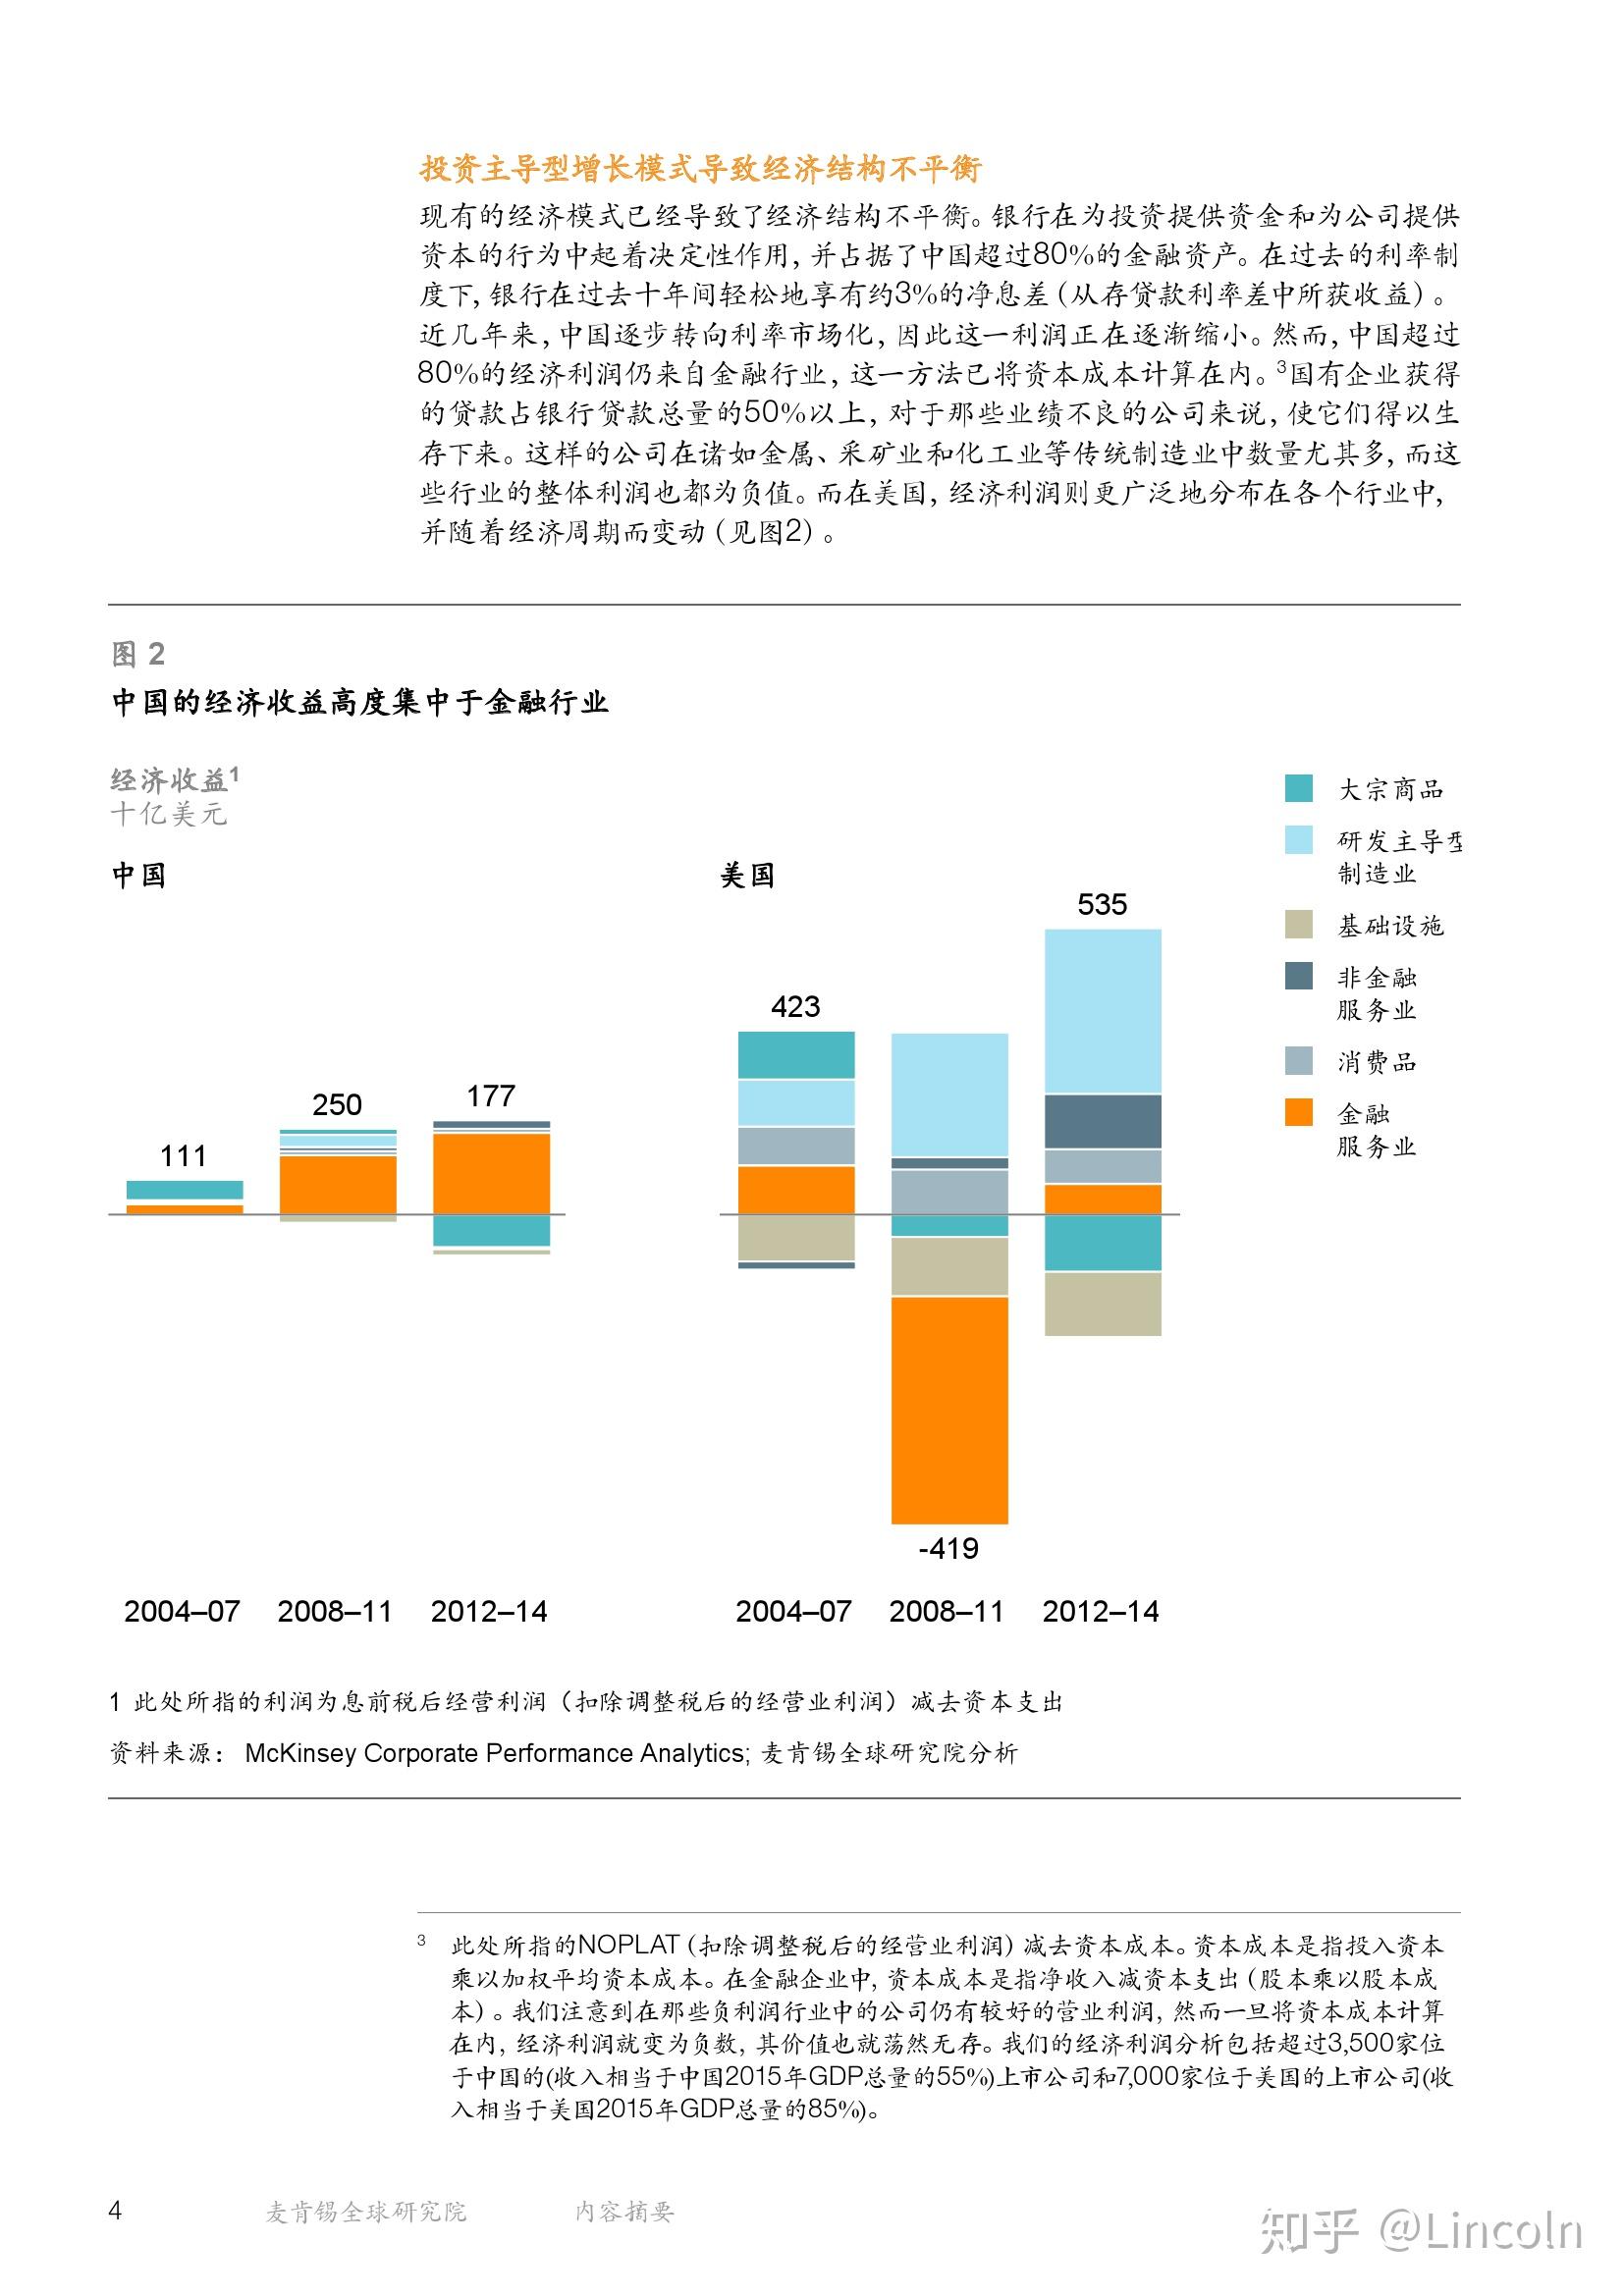 2017 年中国 IT 行业平均工资再超金融业,意味着